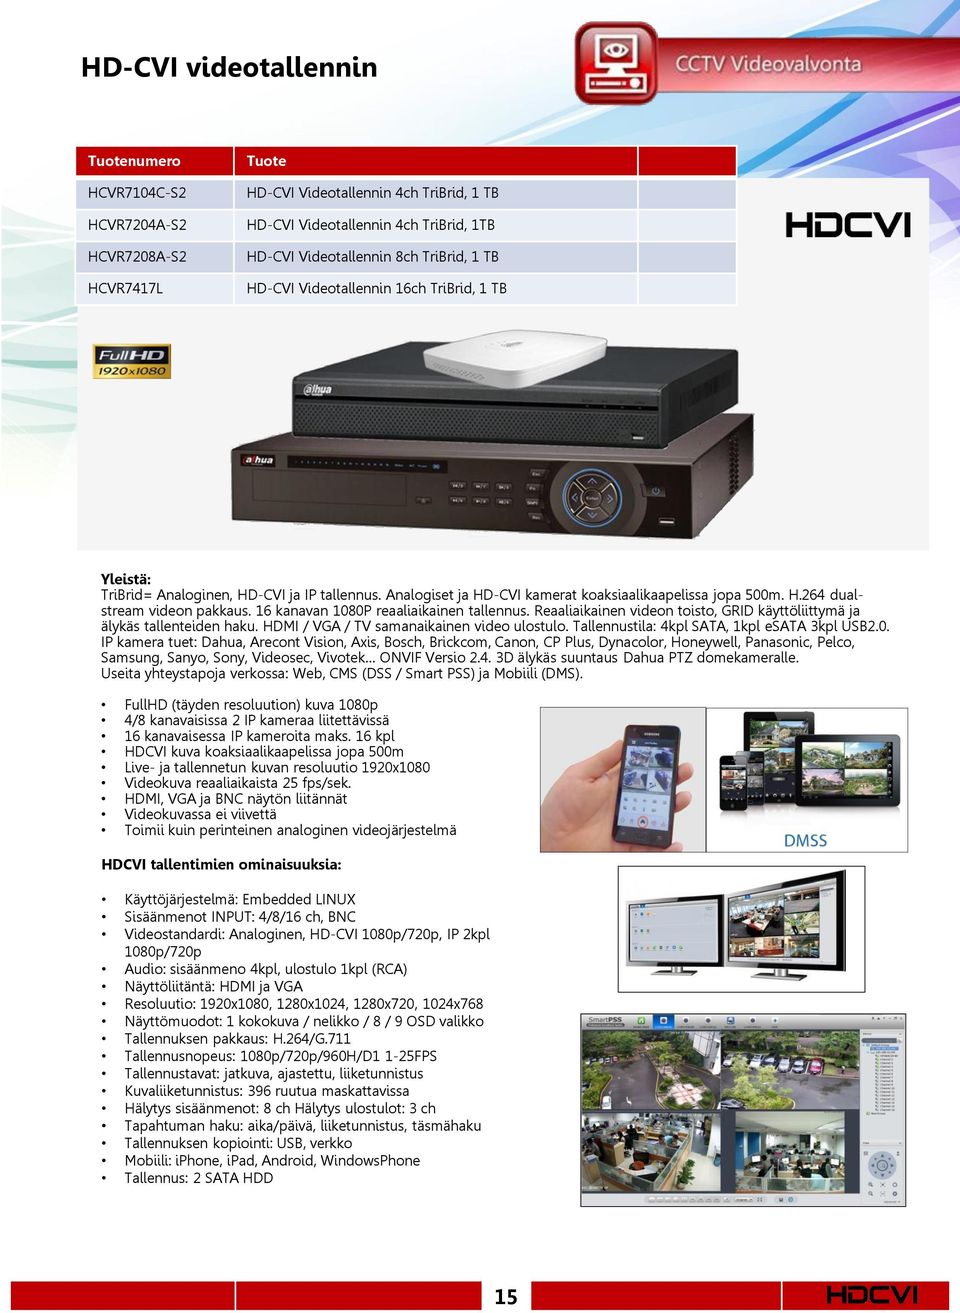 16 kanavan 1080P reaaliaikainen tallennus. Reaaliaikainen videon toisto, GRID käyttöliittymä ja älykäs tallenteiden haku. HDMI / VGA / TV samanaikainen video ulostulo.